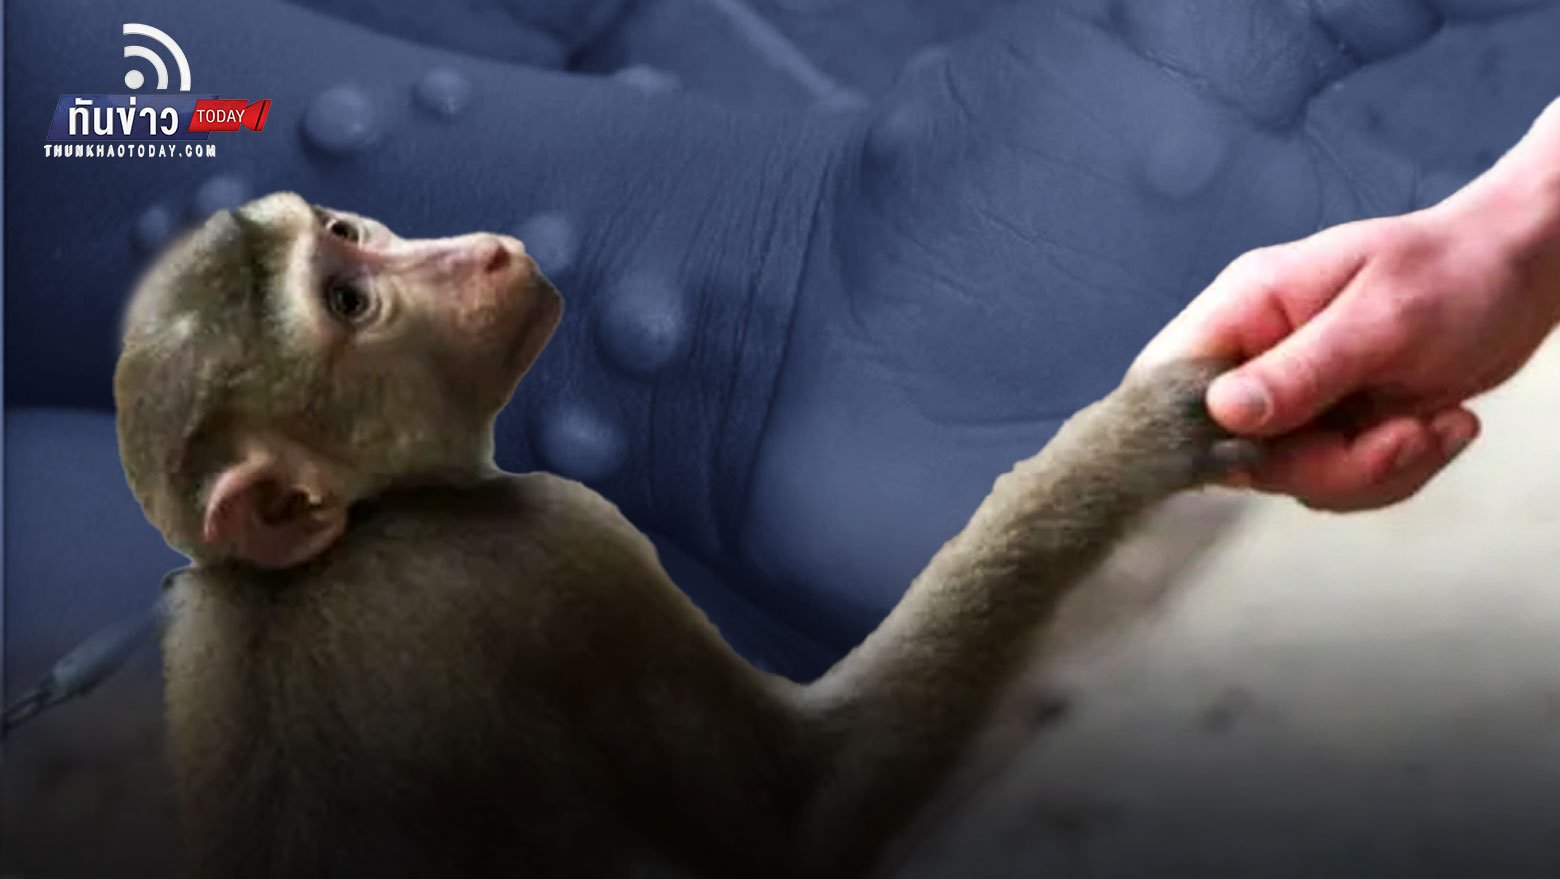 กรมควบคุมโรคเตือนระวัง “โรคฝีดาษลิง” ติดจากสัตว์สู่คน แนะวิธีป้องกัน